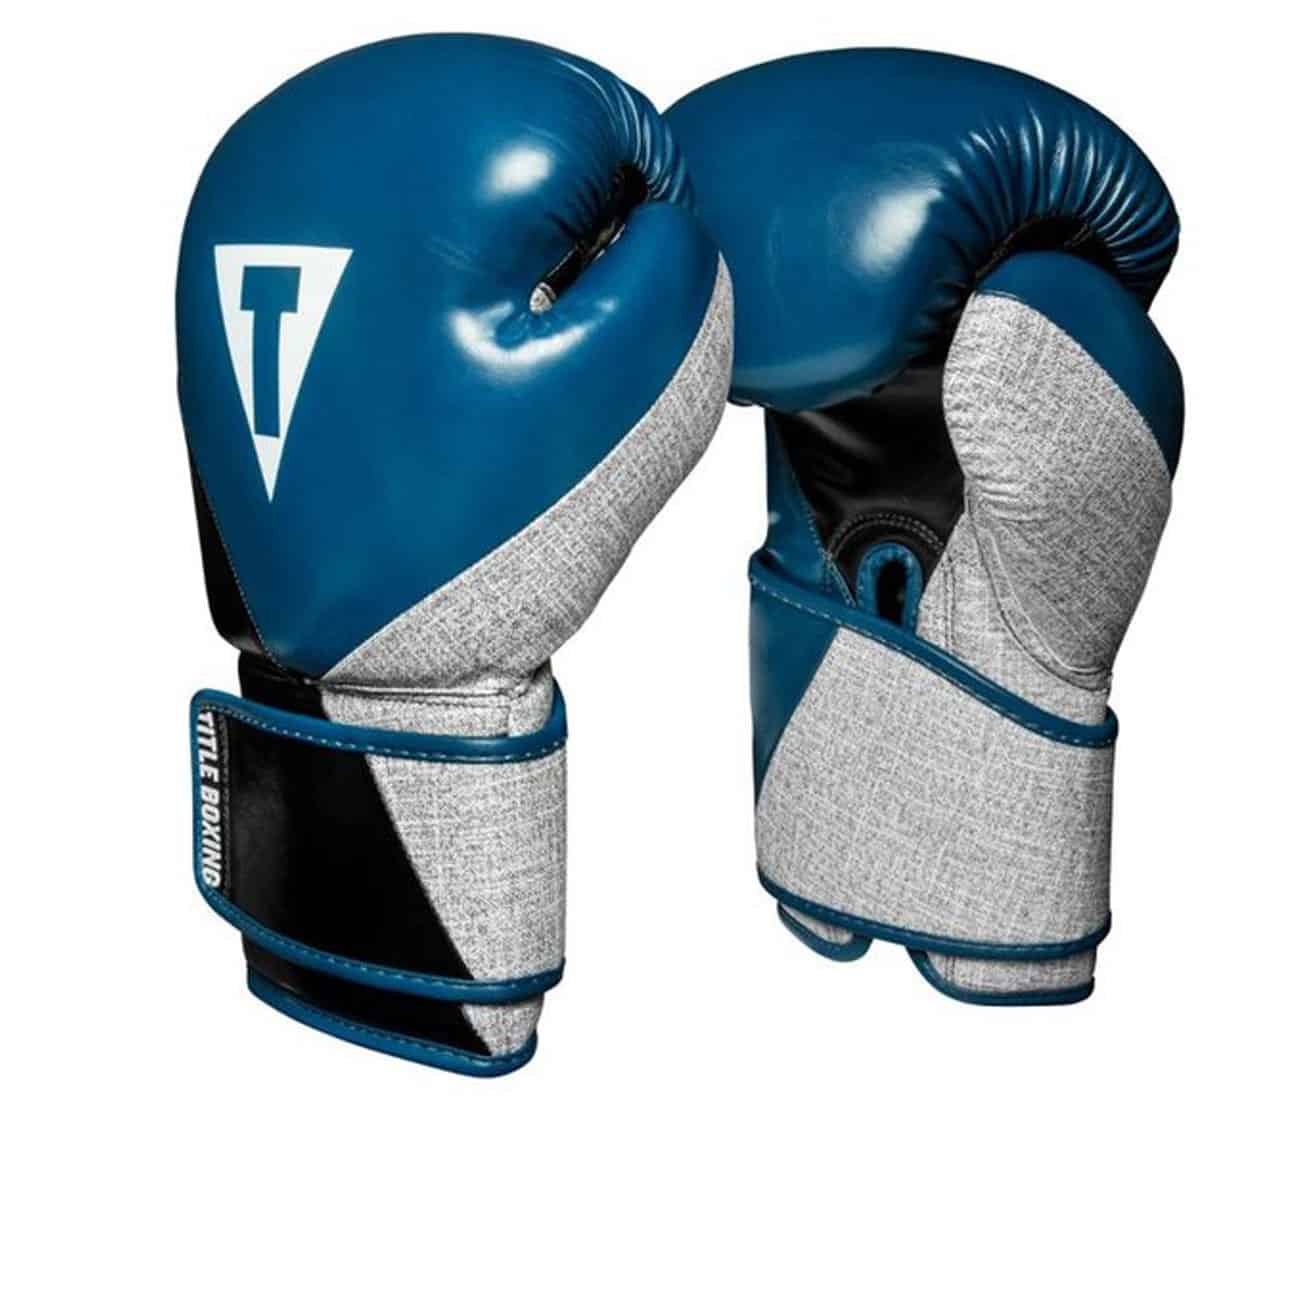 Boxningshandskar i blått konstläder med detaljer i grått. Kardborrelåsning och stoppning som ger bra komfort